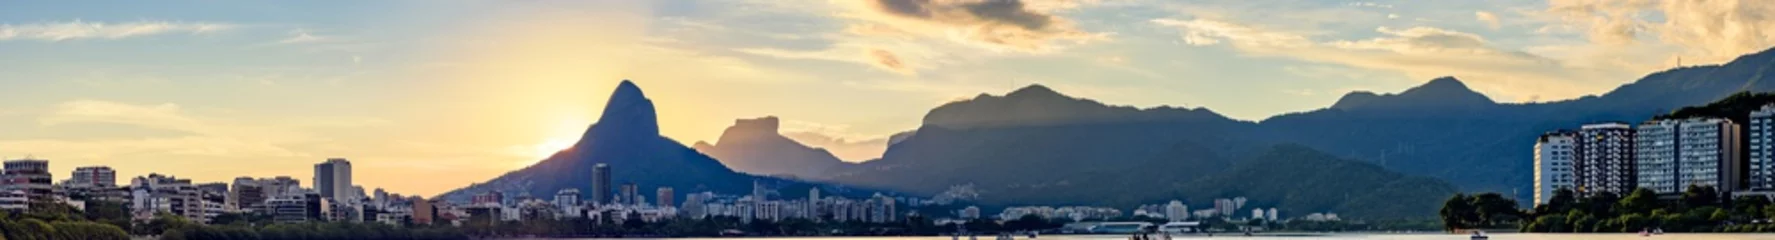 Fototapeten Panoramabild des ersten Sommersonnenuntergangs des Jahres 2018, gesehen von der Lagune Rodrigo de Freitas mit den Gebäuden der Stadt Rio de Janeiro, dem Hügel Dois Irmãos und dem Gavea-Stein © Fred Pinheiro